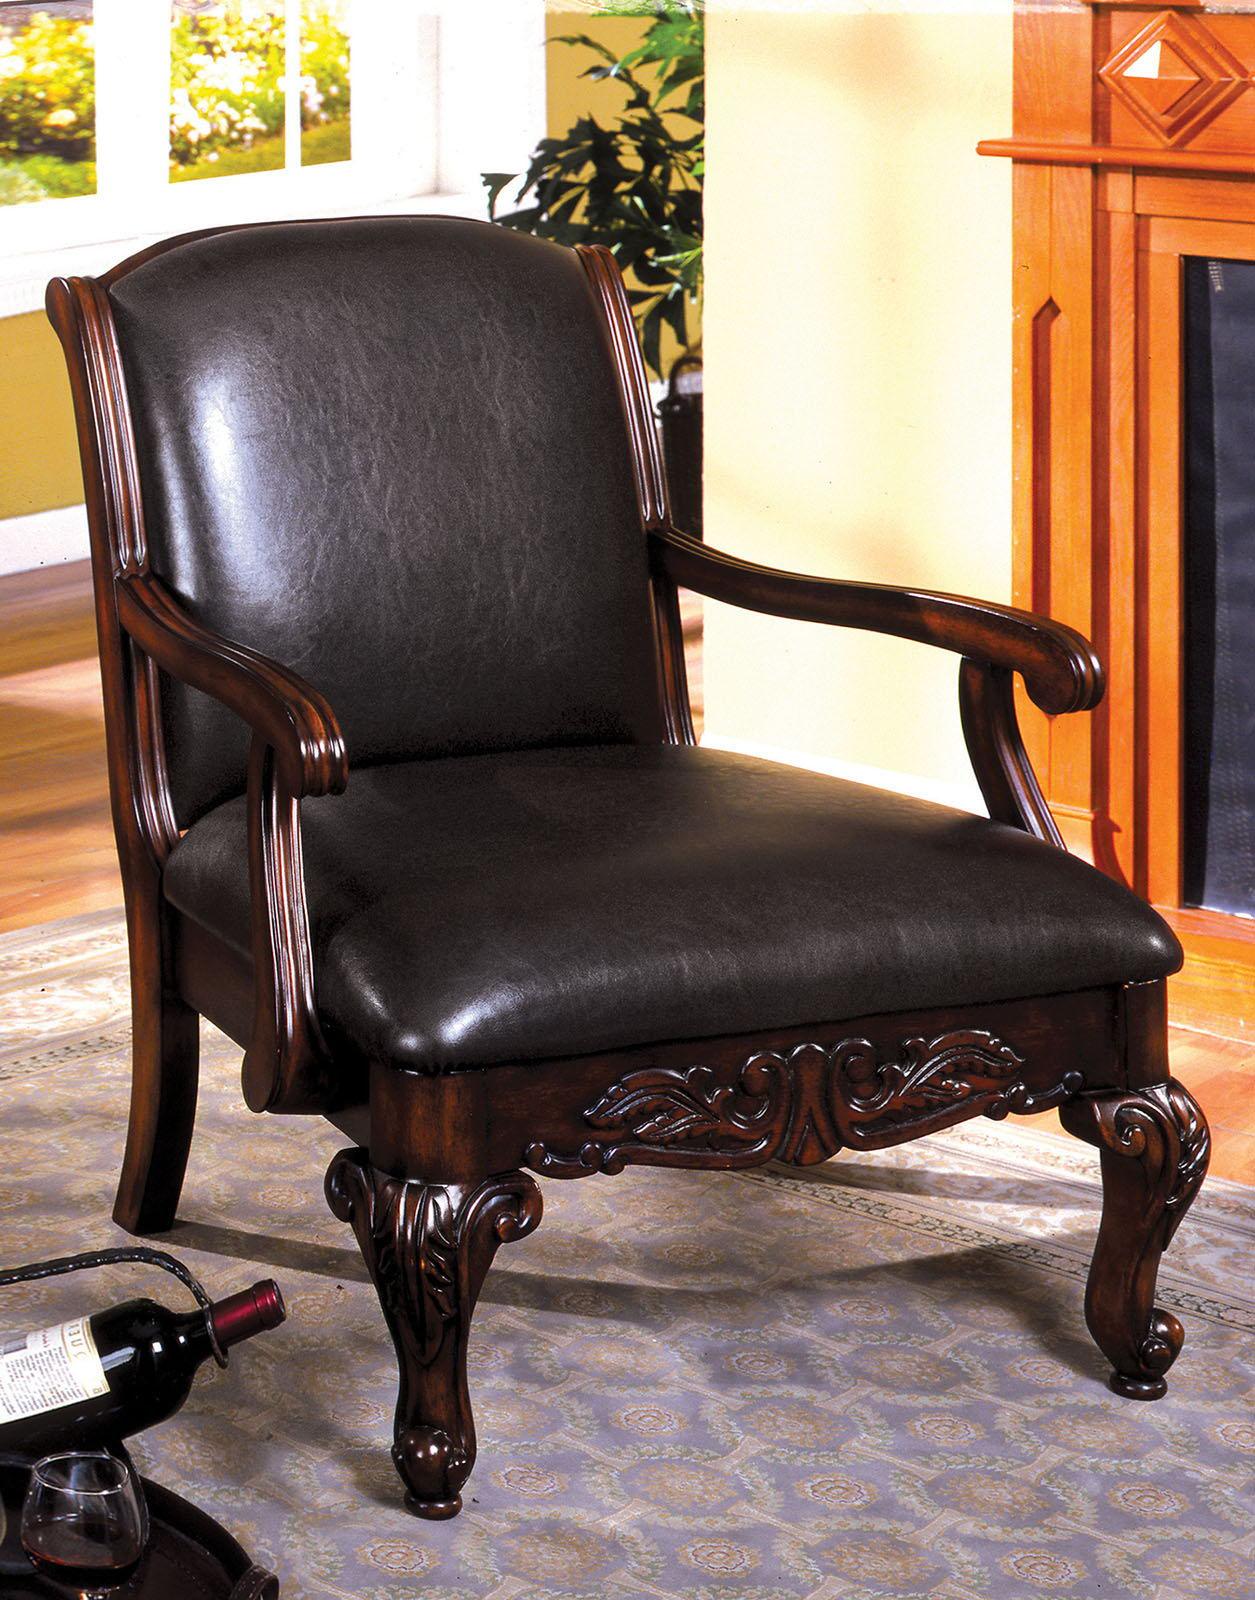 Furniture of America - Sheffield - Accent Chair - Antique Dark Cherry - 5th Avenue Furniture